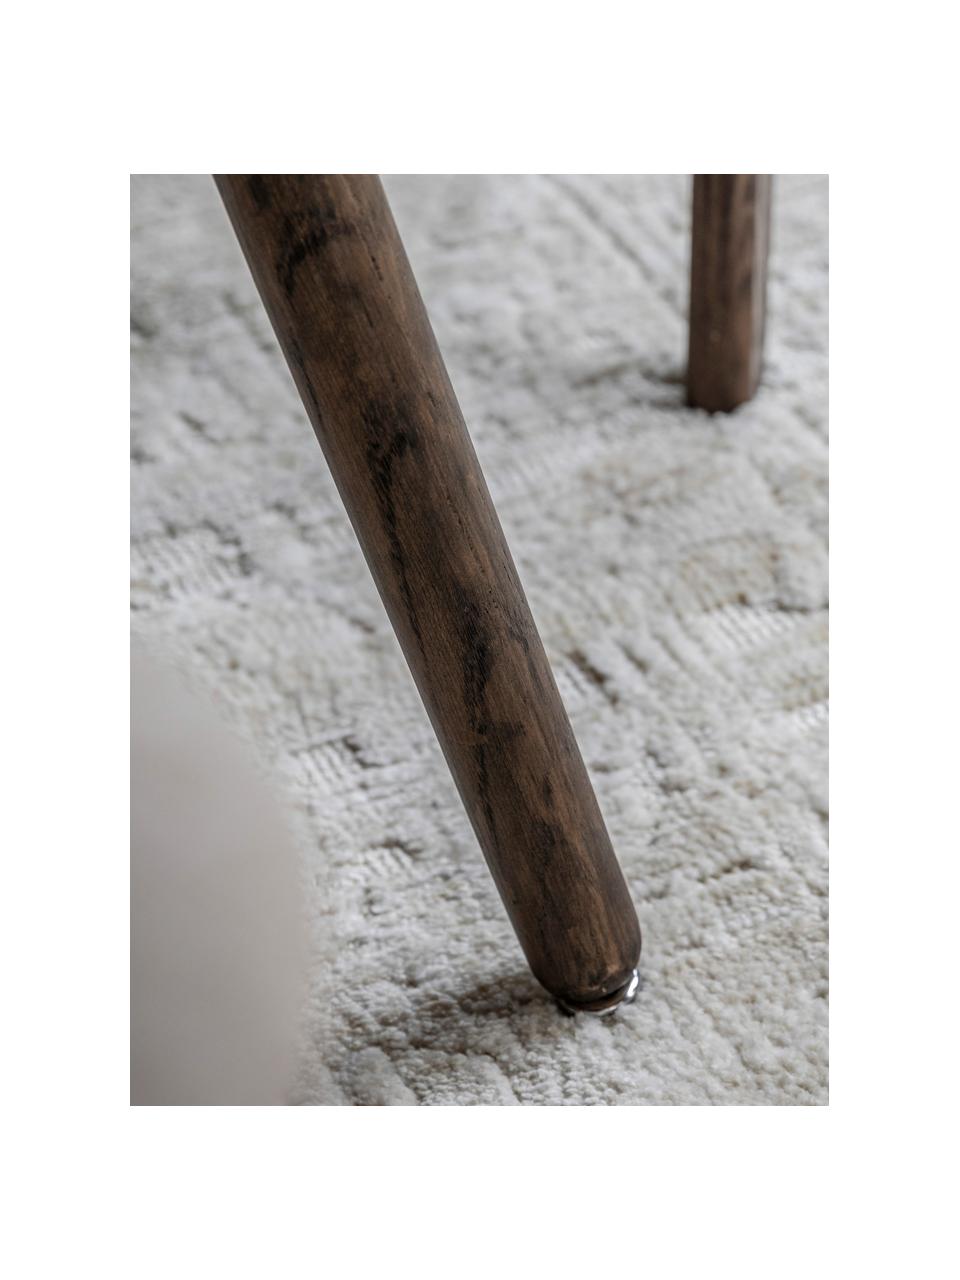 Tavolo in legno Hatfield, 77 x 77 cm, Gambe: pannello di fibra a media, Legno di quercia laccato scuro, Larg. 77 x Prof. 77 cm